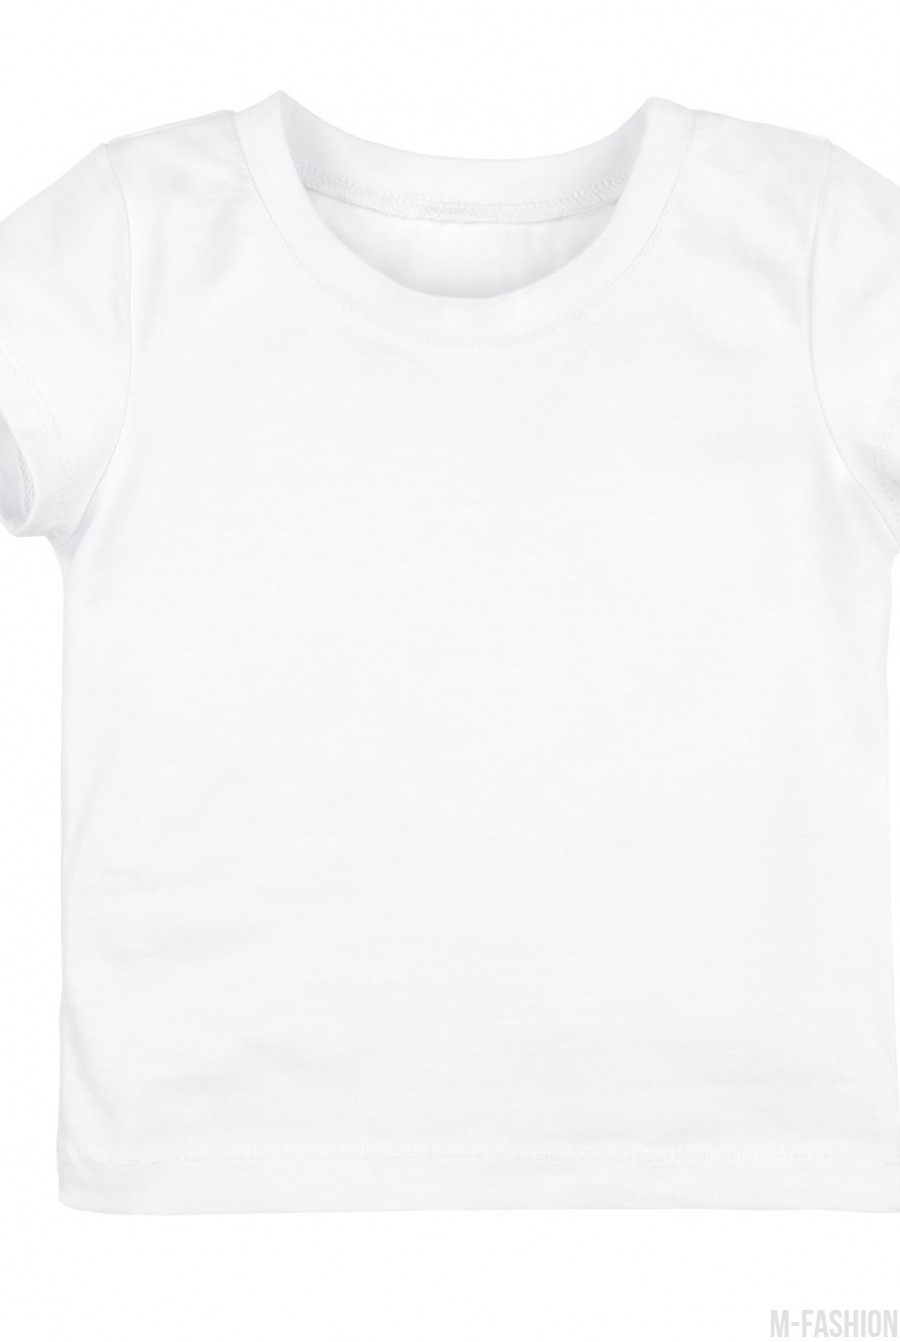 Белая трикотажная футболка с возможностью индивидуальной печати фамилии и номера на принте- Фото 3